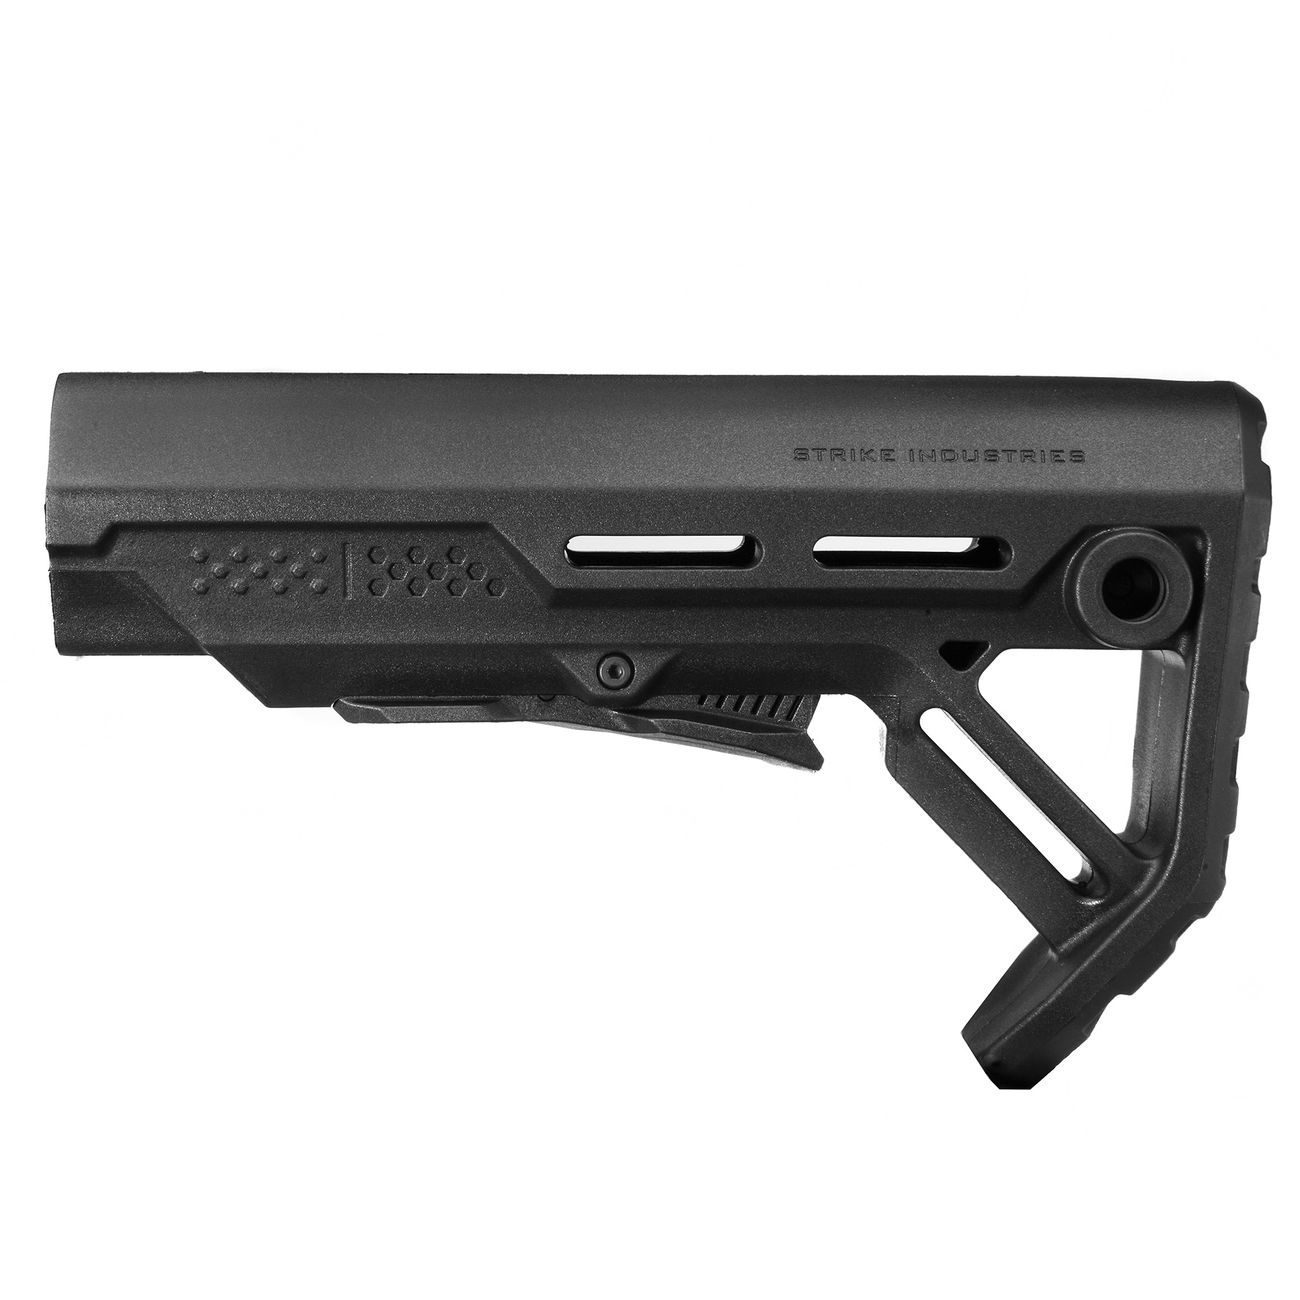 Strike Industries M4 Viper Mod 1 Mil-Spec Carbine Schaft schwarz Bild 1